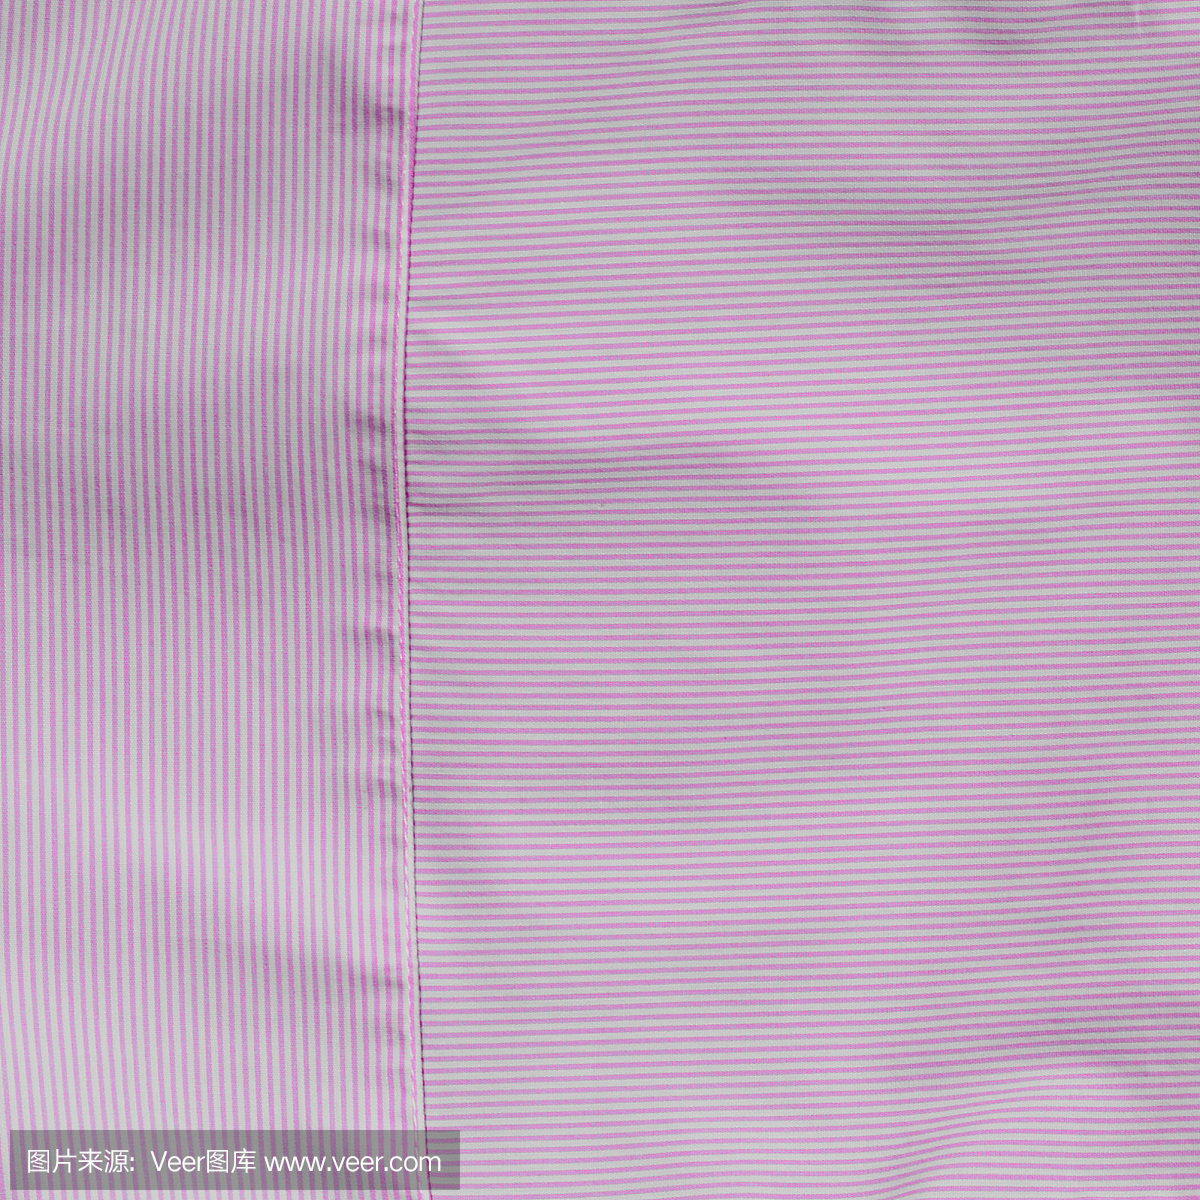 棉纺织材料,白色和粉红色条纹分开的背景